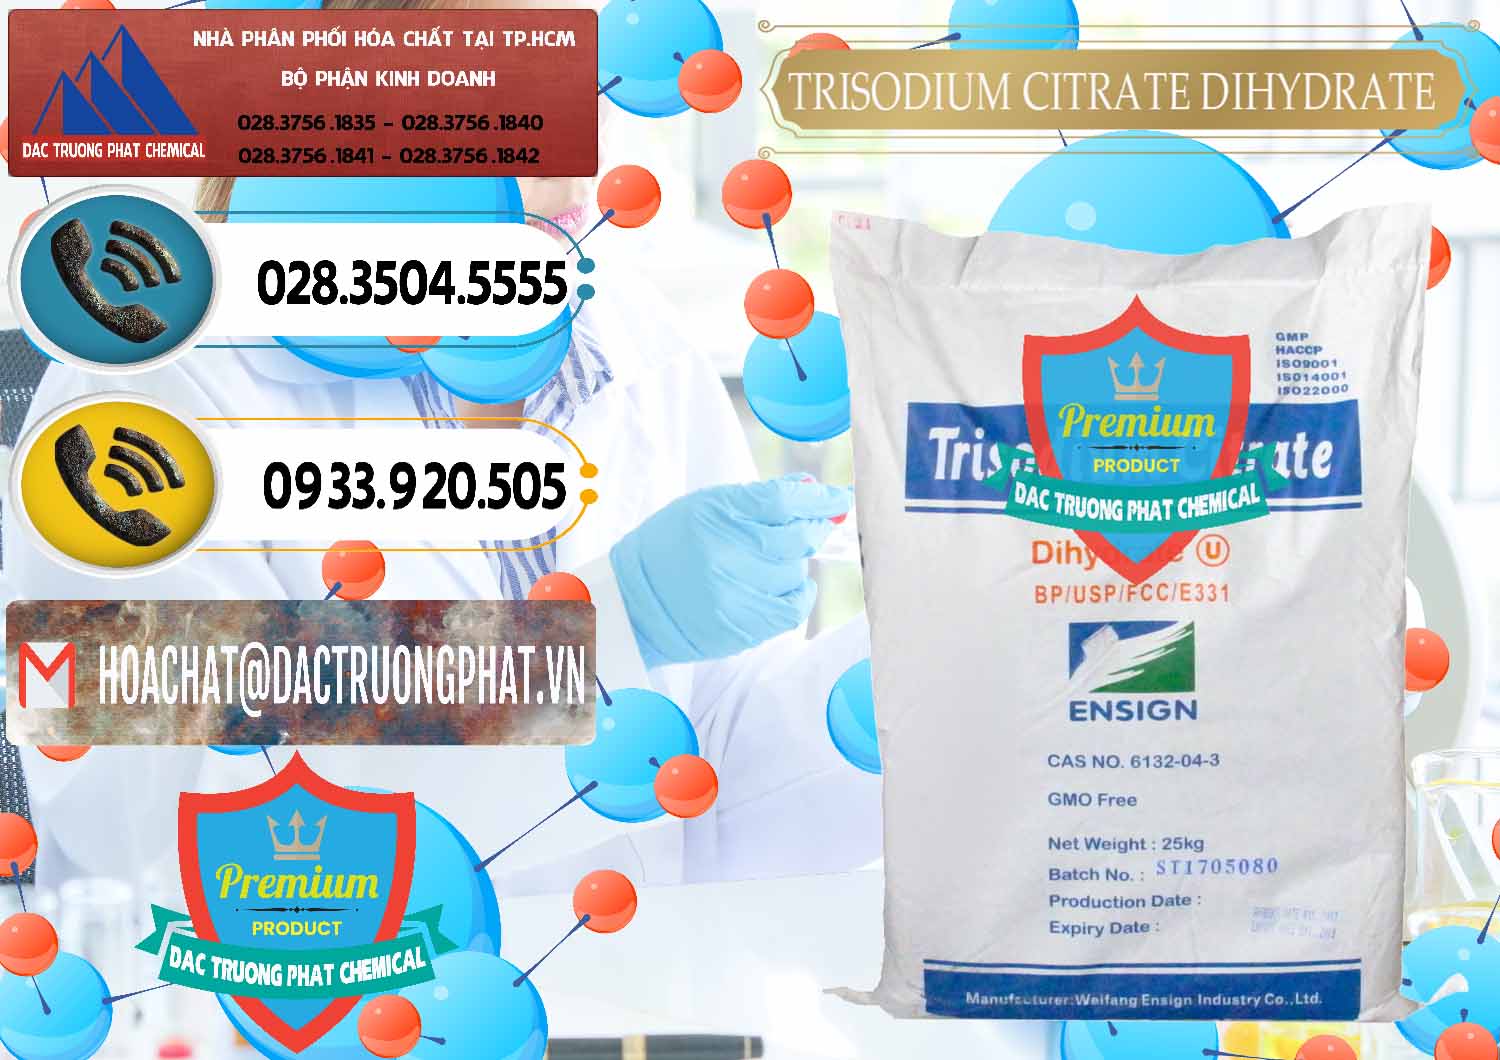 Cty chuyên nhập khẩu - bán Trisodium Citrate Dihydrate - Na3C6H5O7 Weifang Trung Quốc China - 0324 - Chuyên nhập khẩu _ phân phối hóa chất tại TP.HCM - hoachatdetnhuom.vn